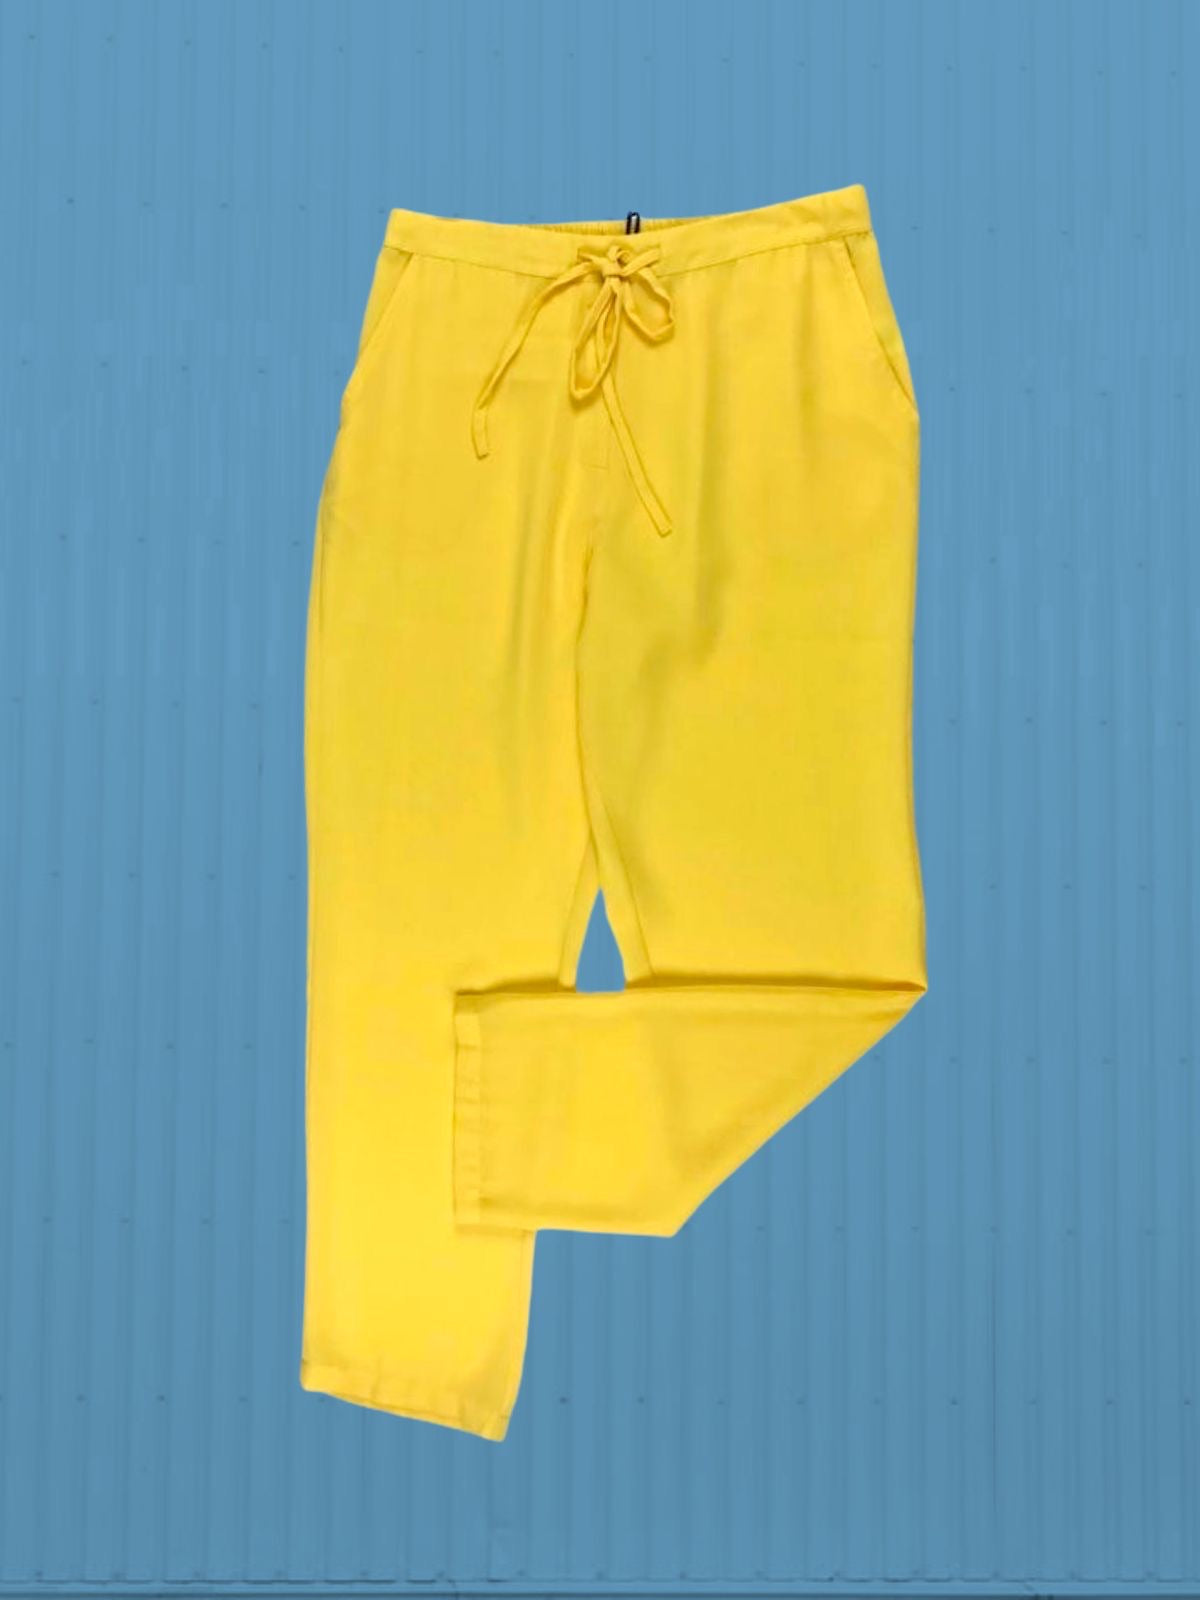 Md'M | Dress pajama pants 5119 yellow